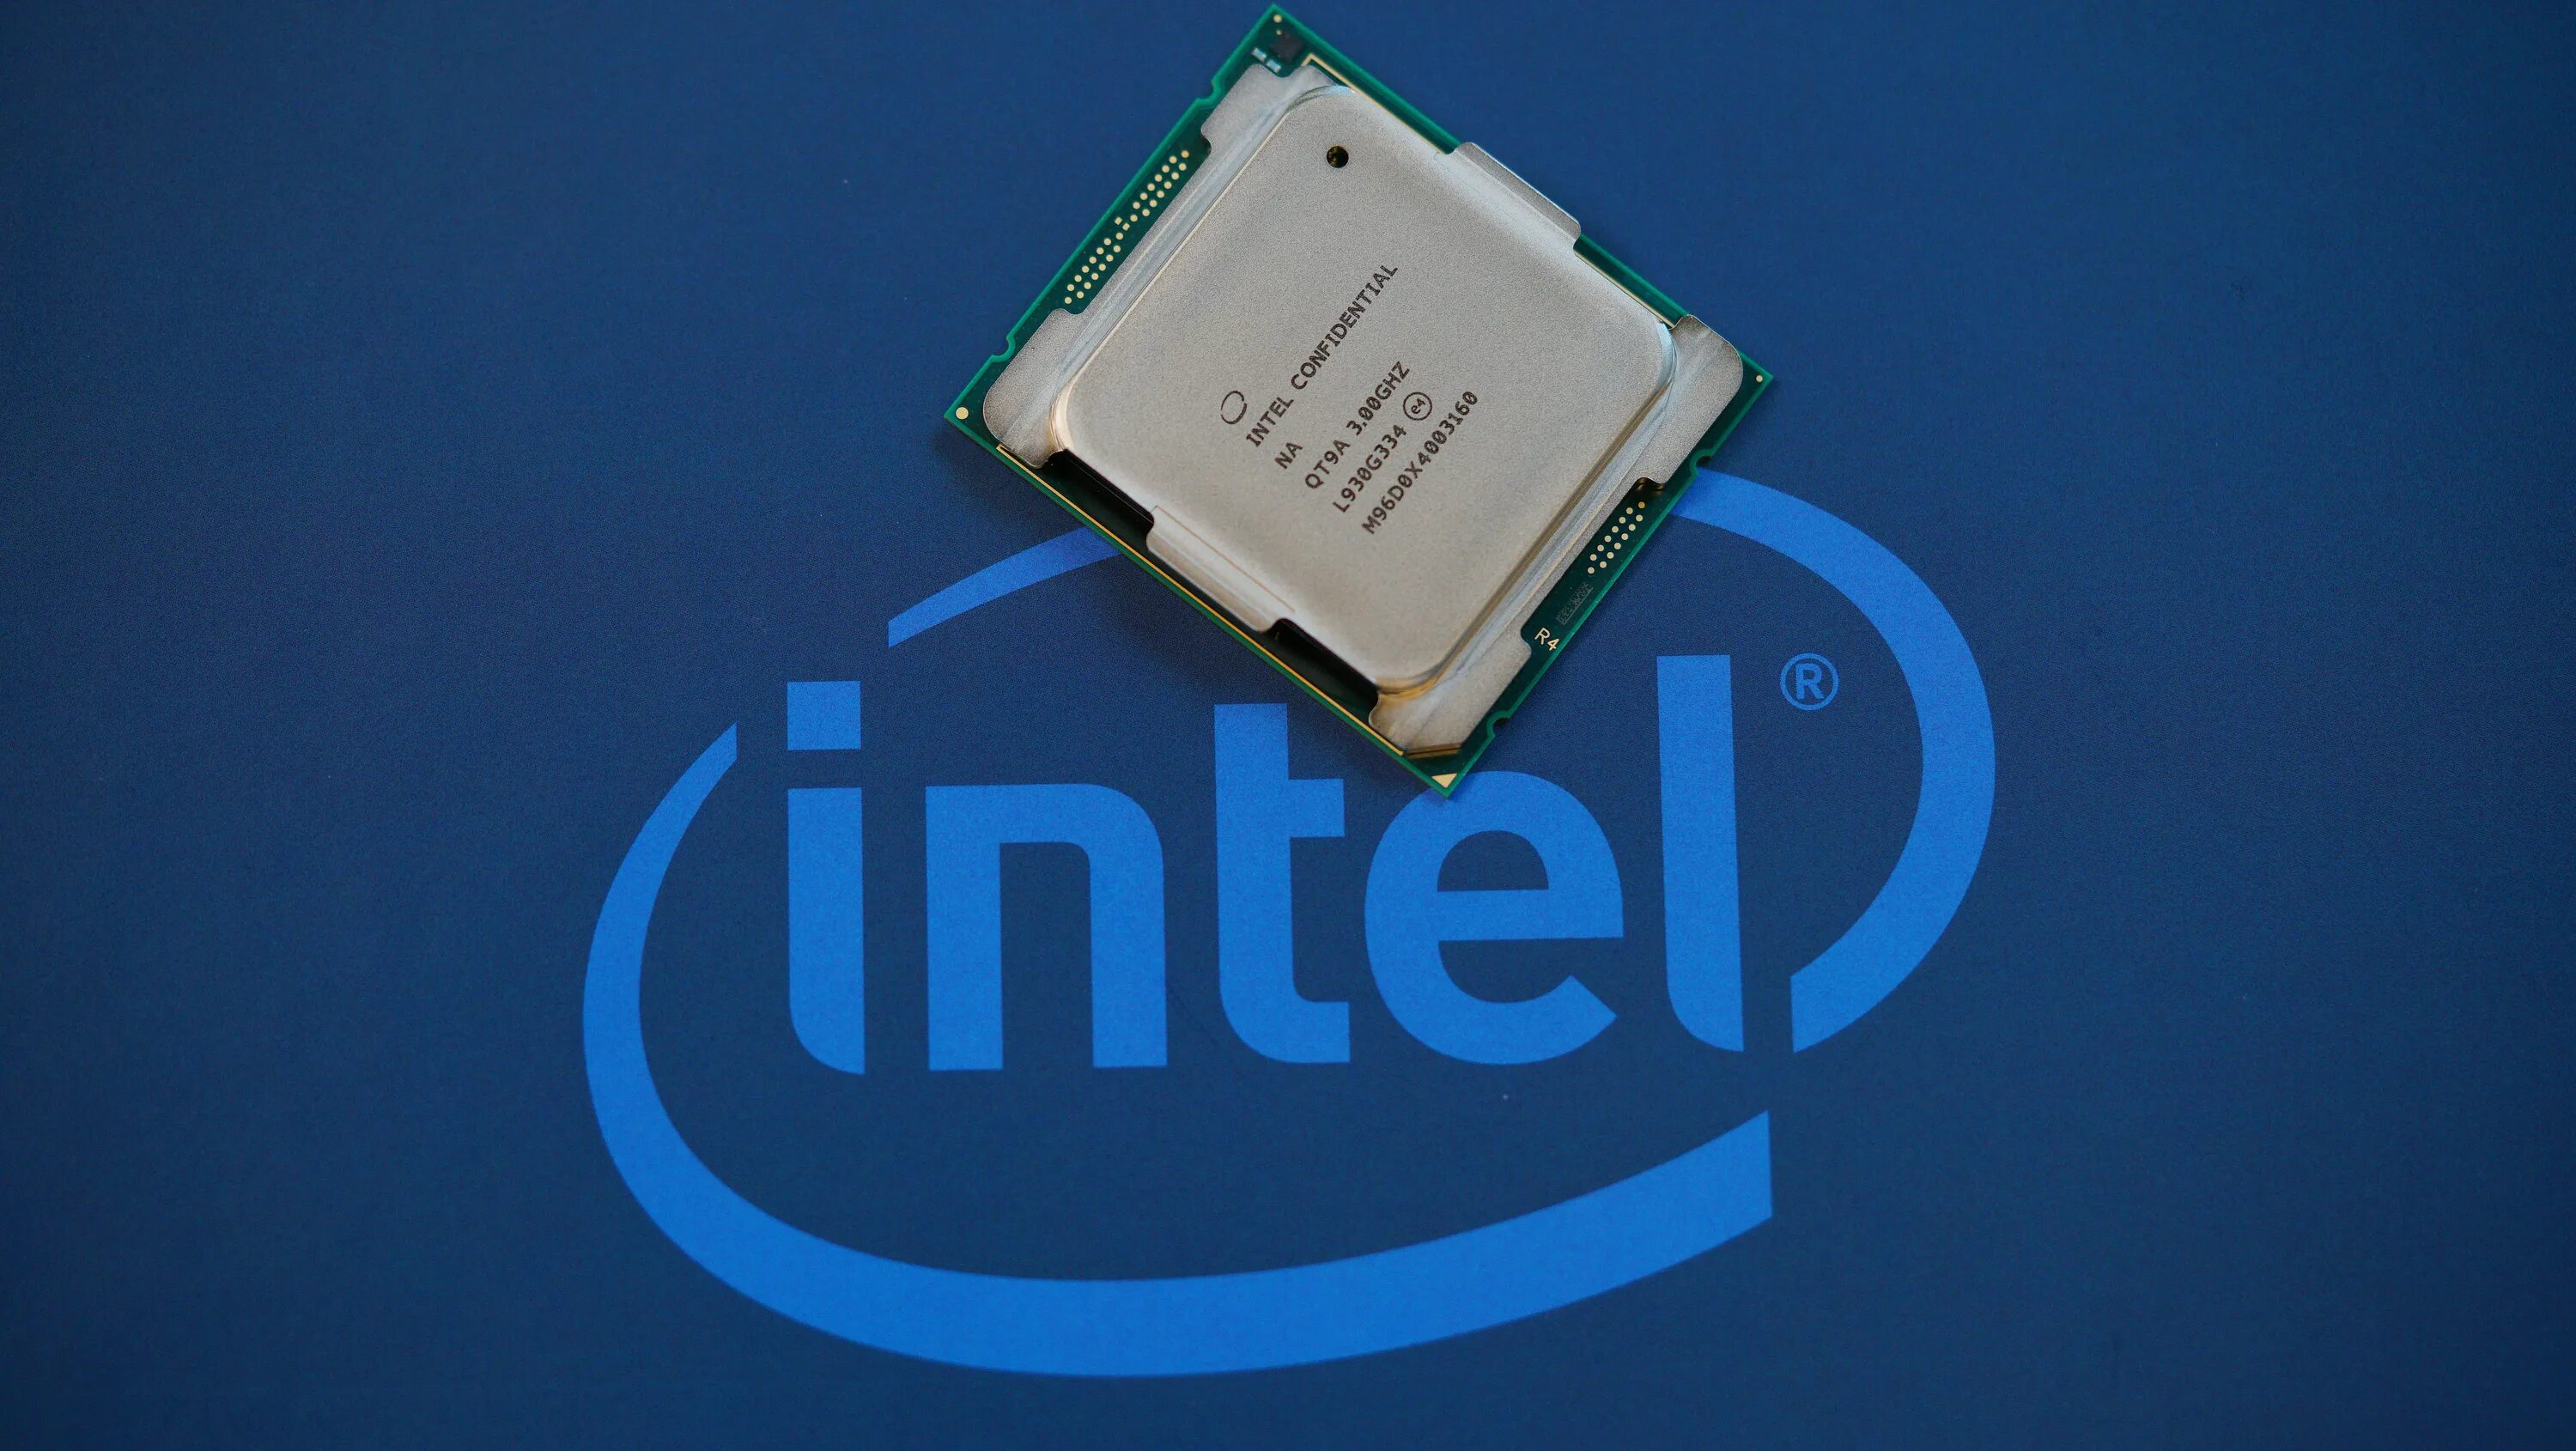 Core i9 10980xe. Intel Core i9-10980xe. Intel Core i9-10980xe OEM. Intel Core i5 13400. Intel Core i7-10700f.